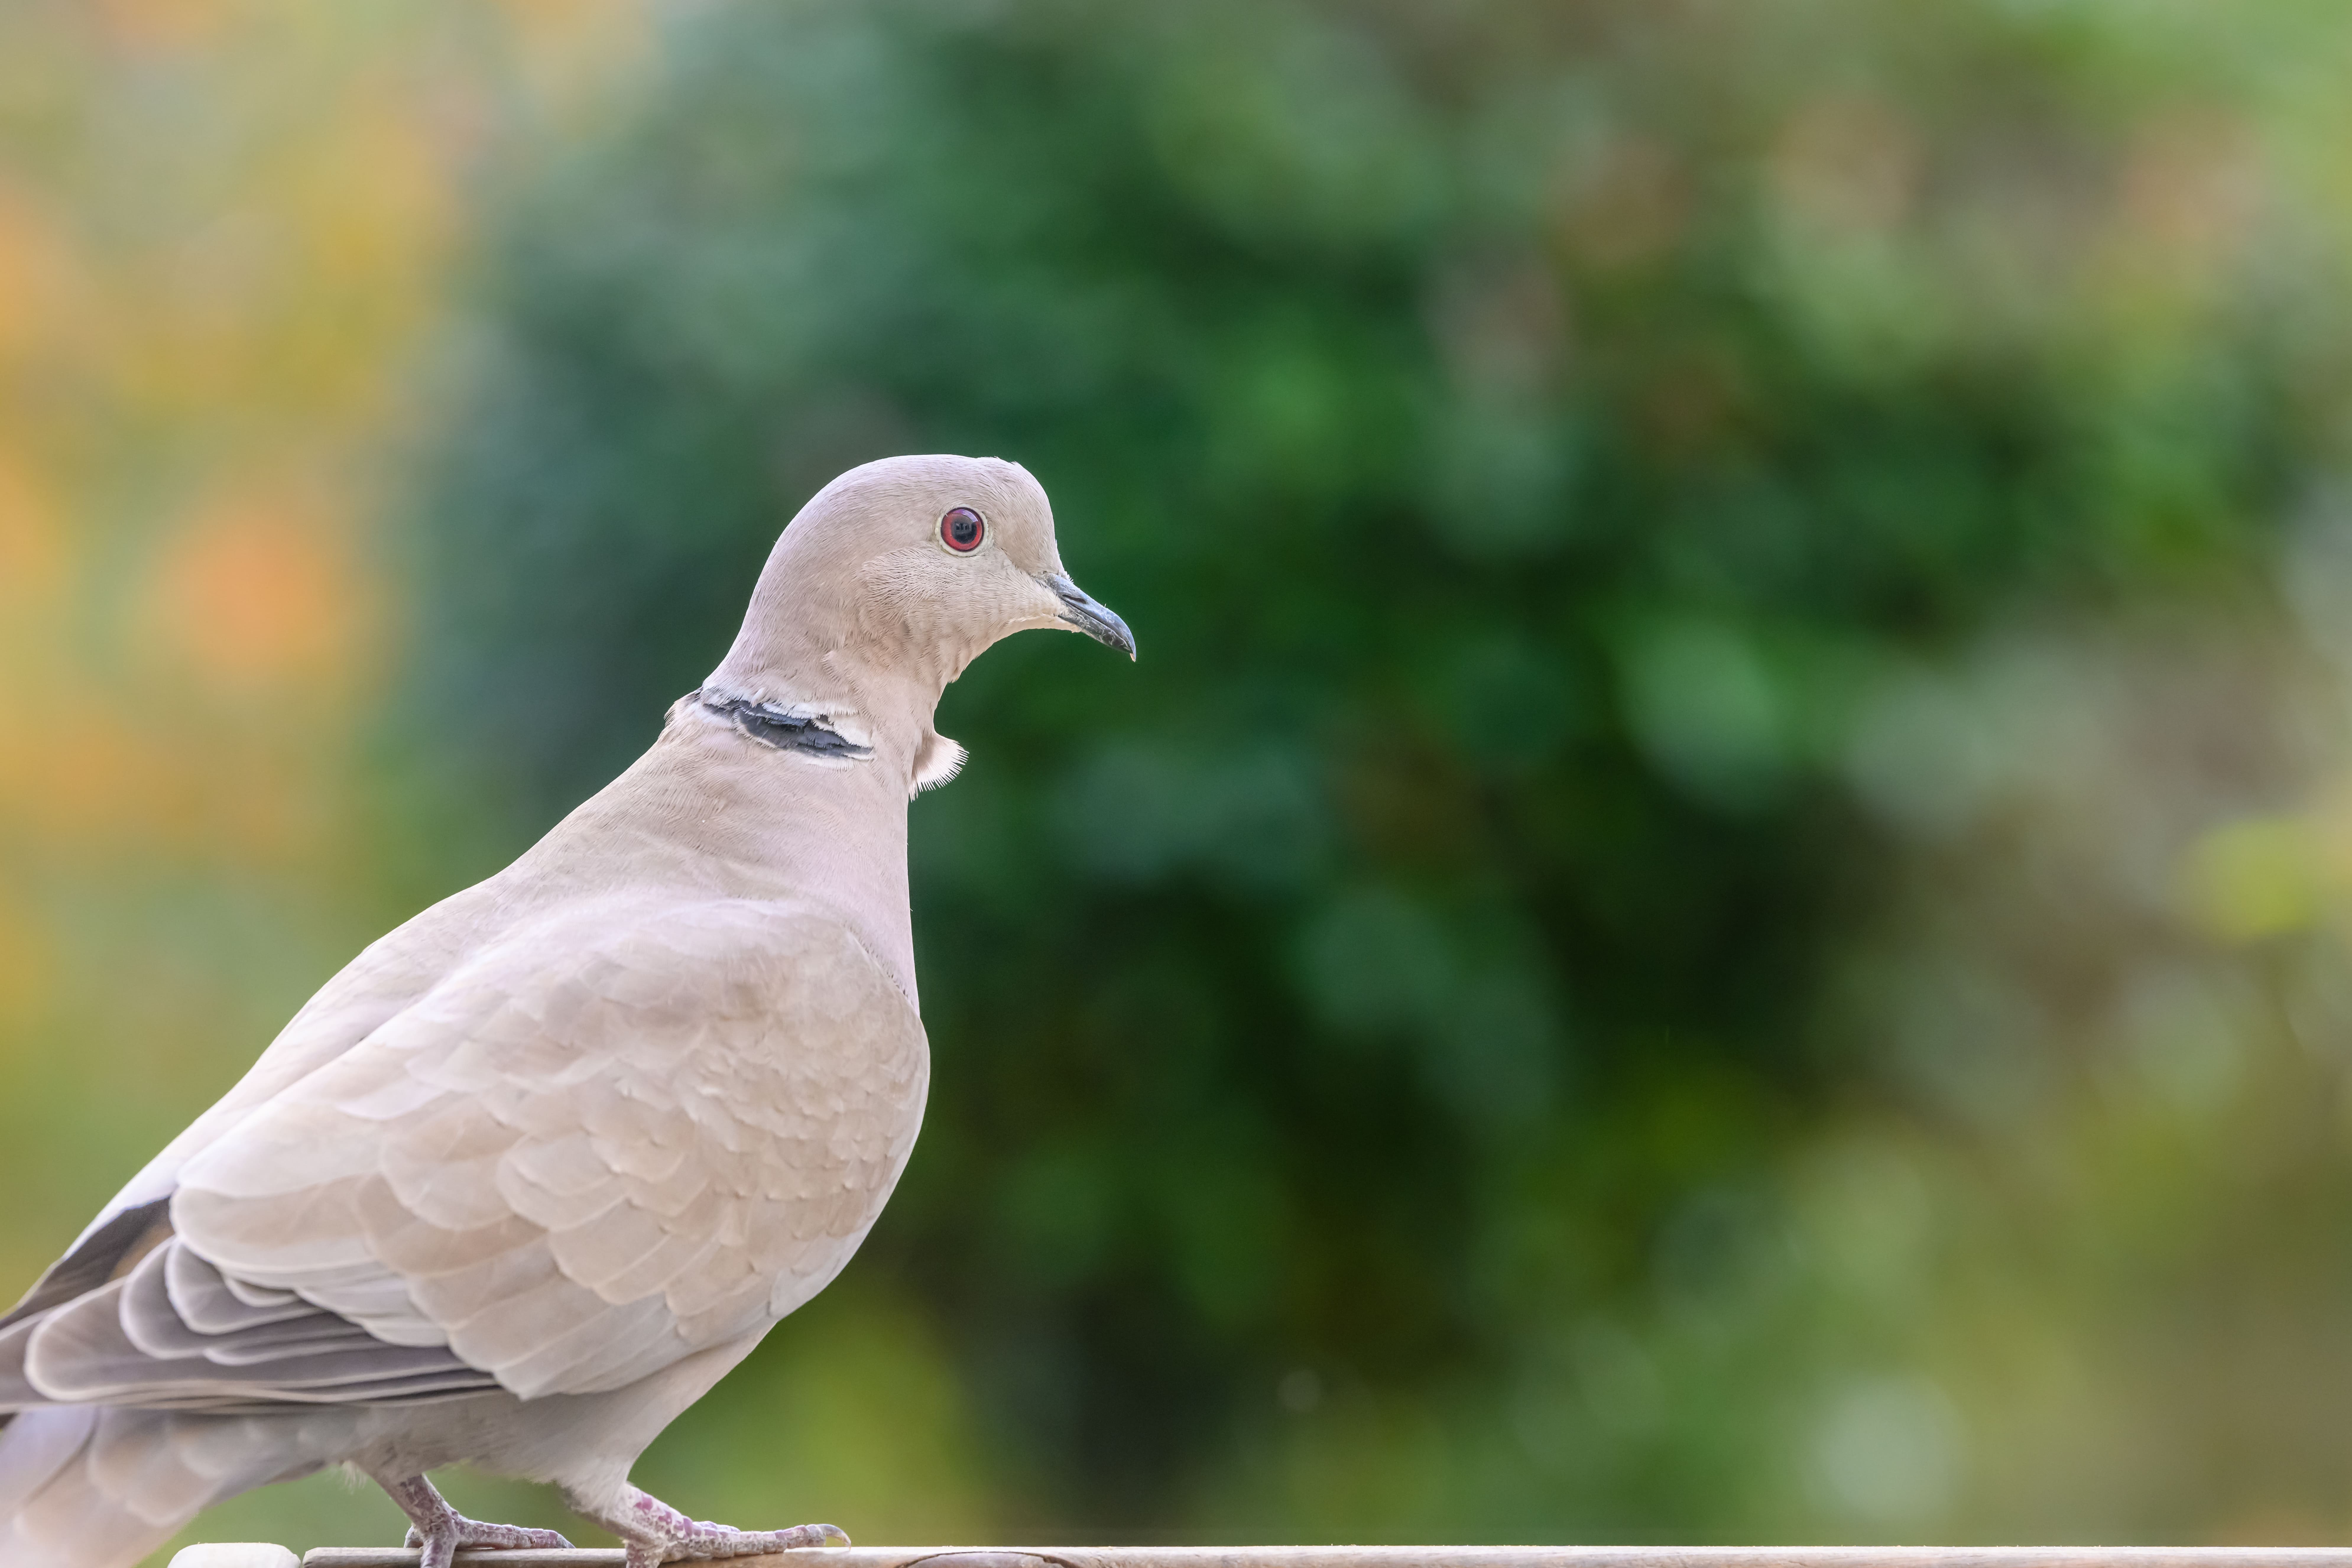 a-collared-dove-perched-on-a-garden-bird-table-min